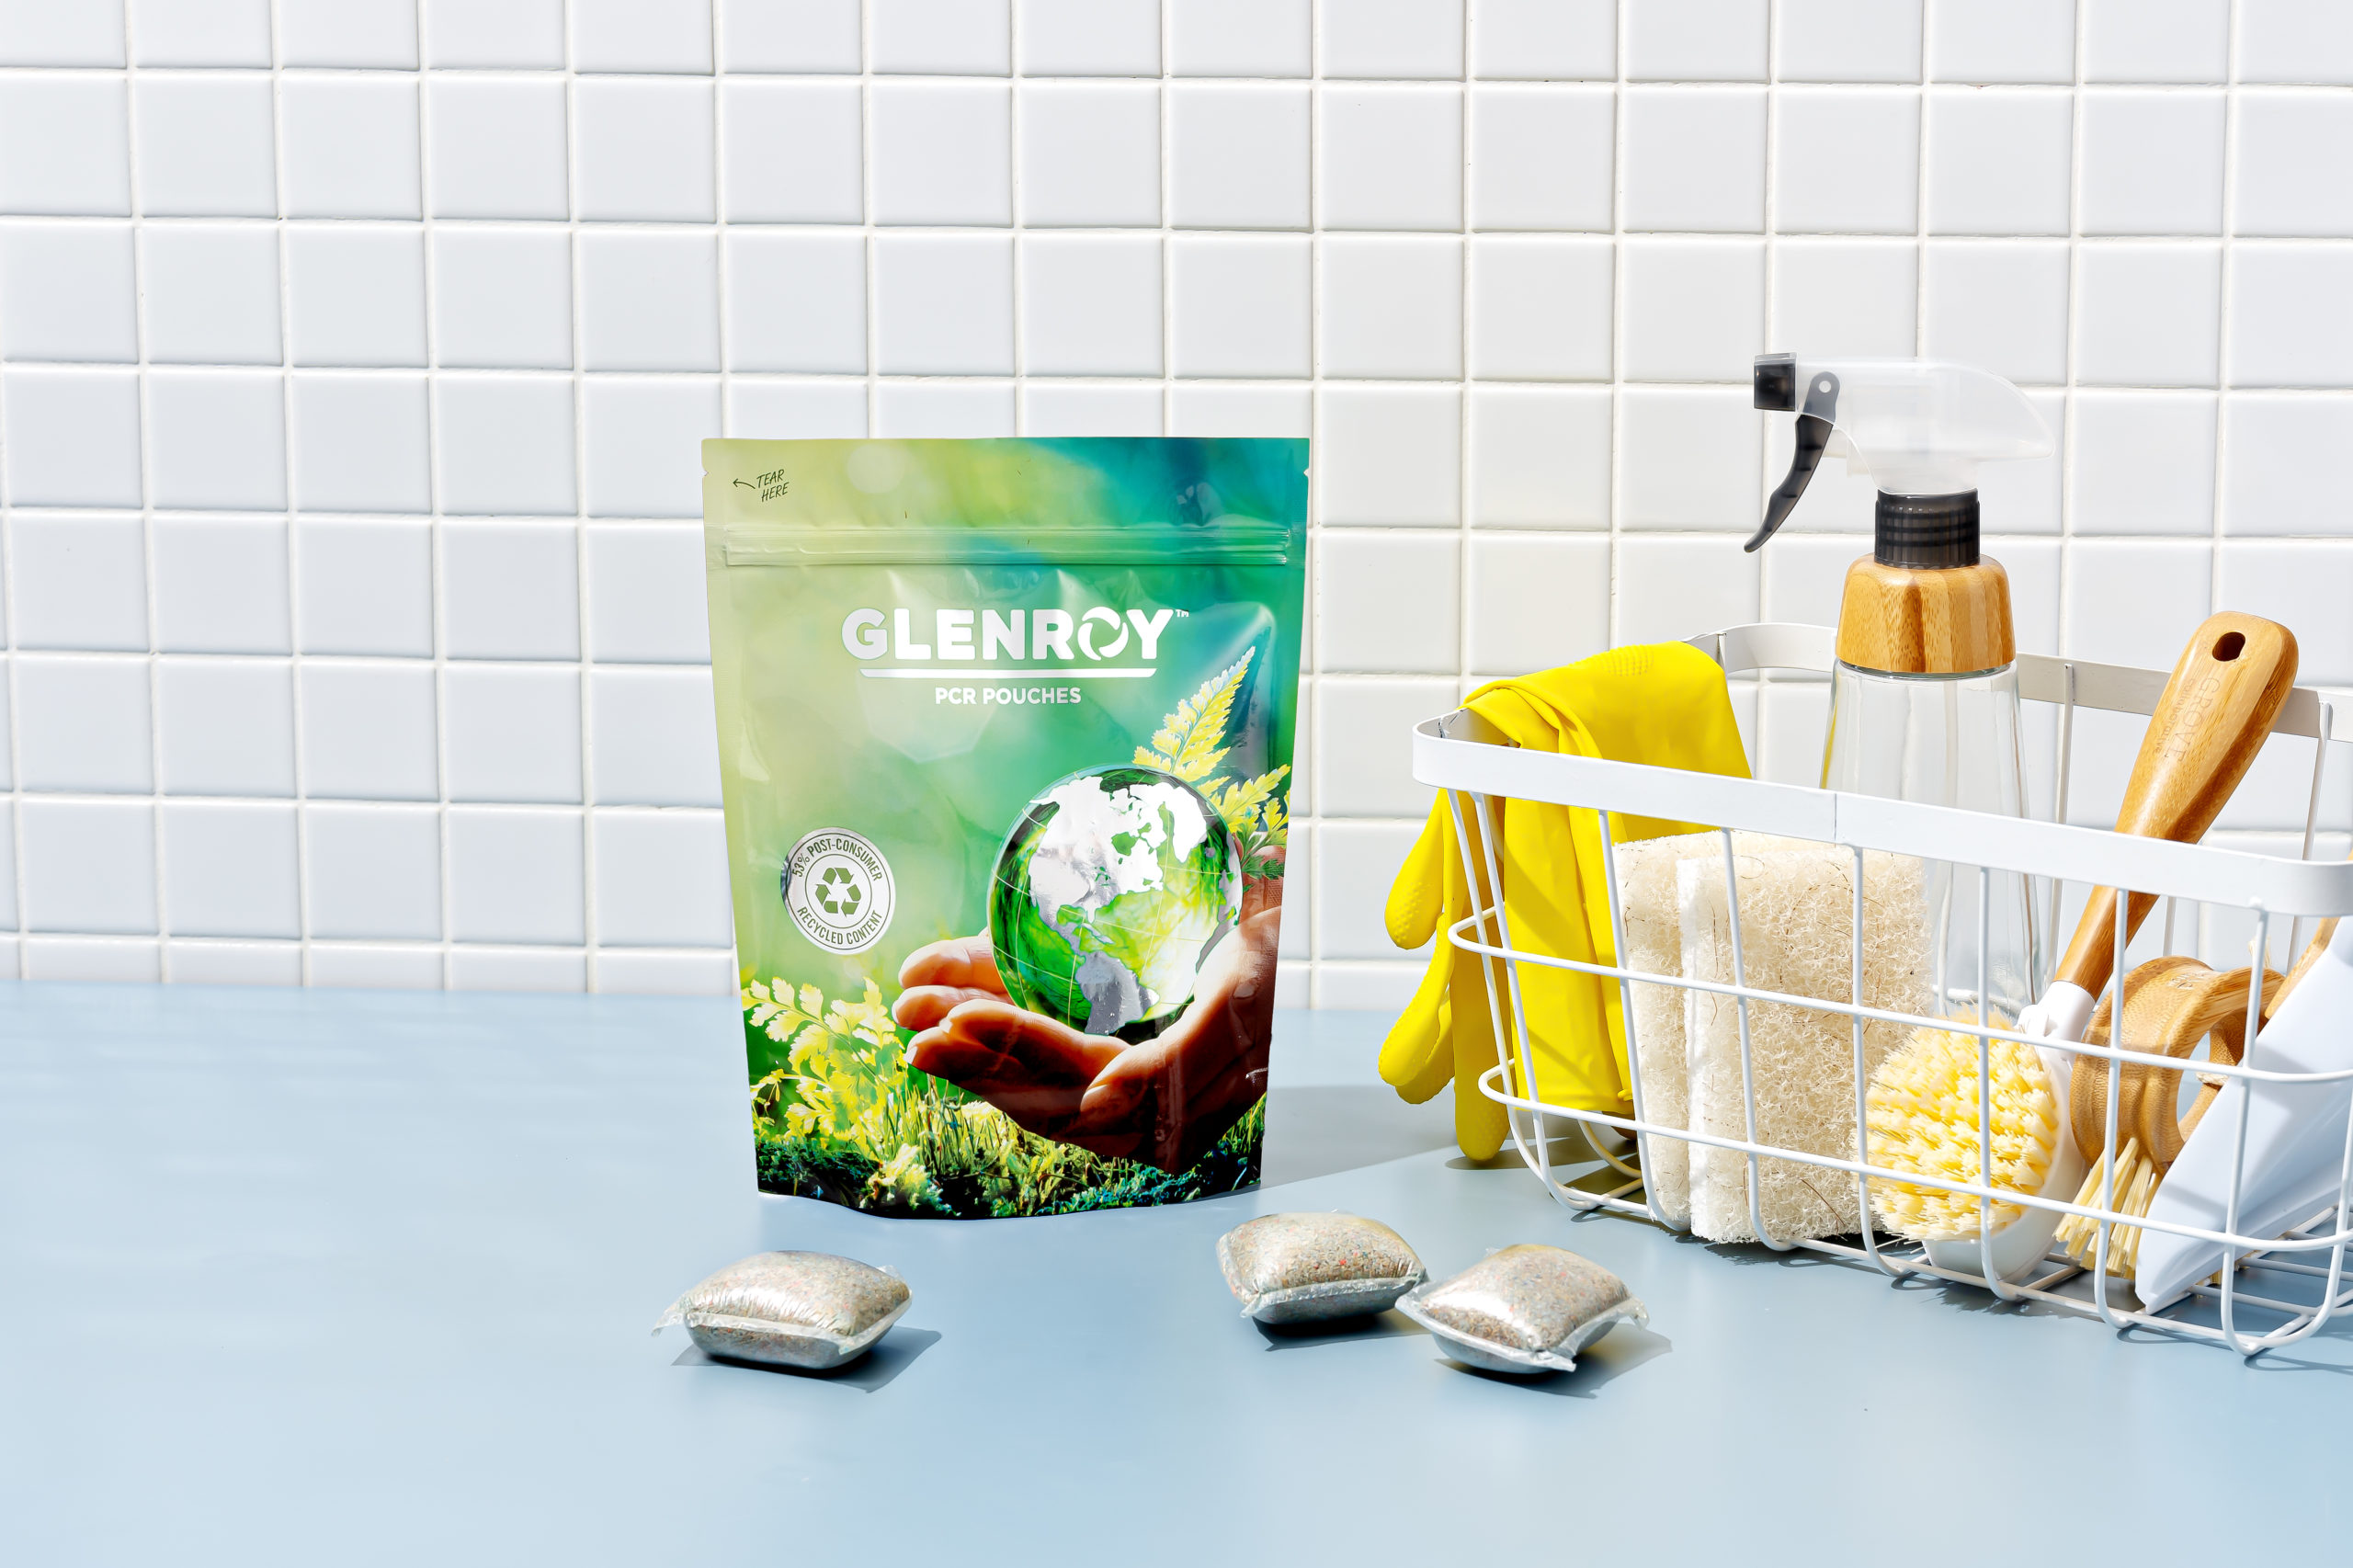 Glenroy - sustainable packaging